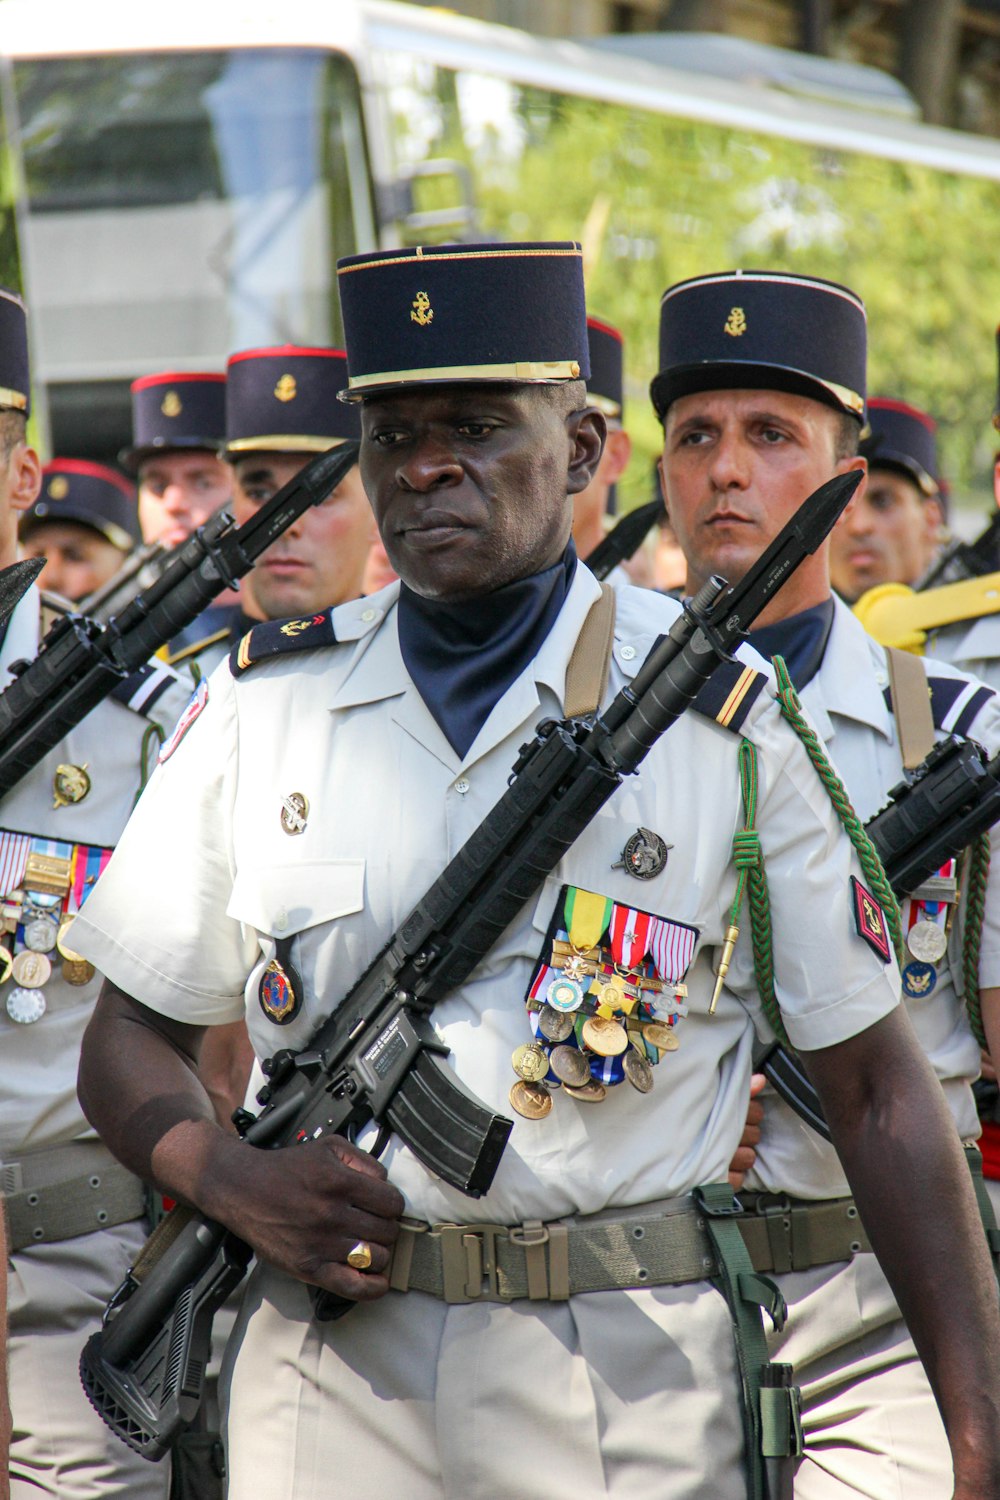 Un groupe d’hommes en uniforme tenant des armes à feu